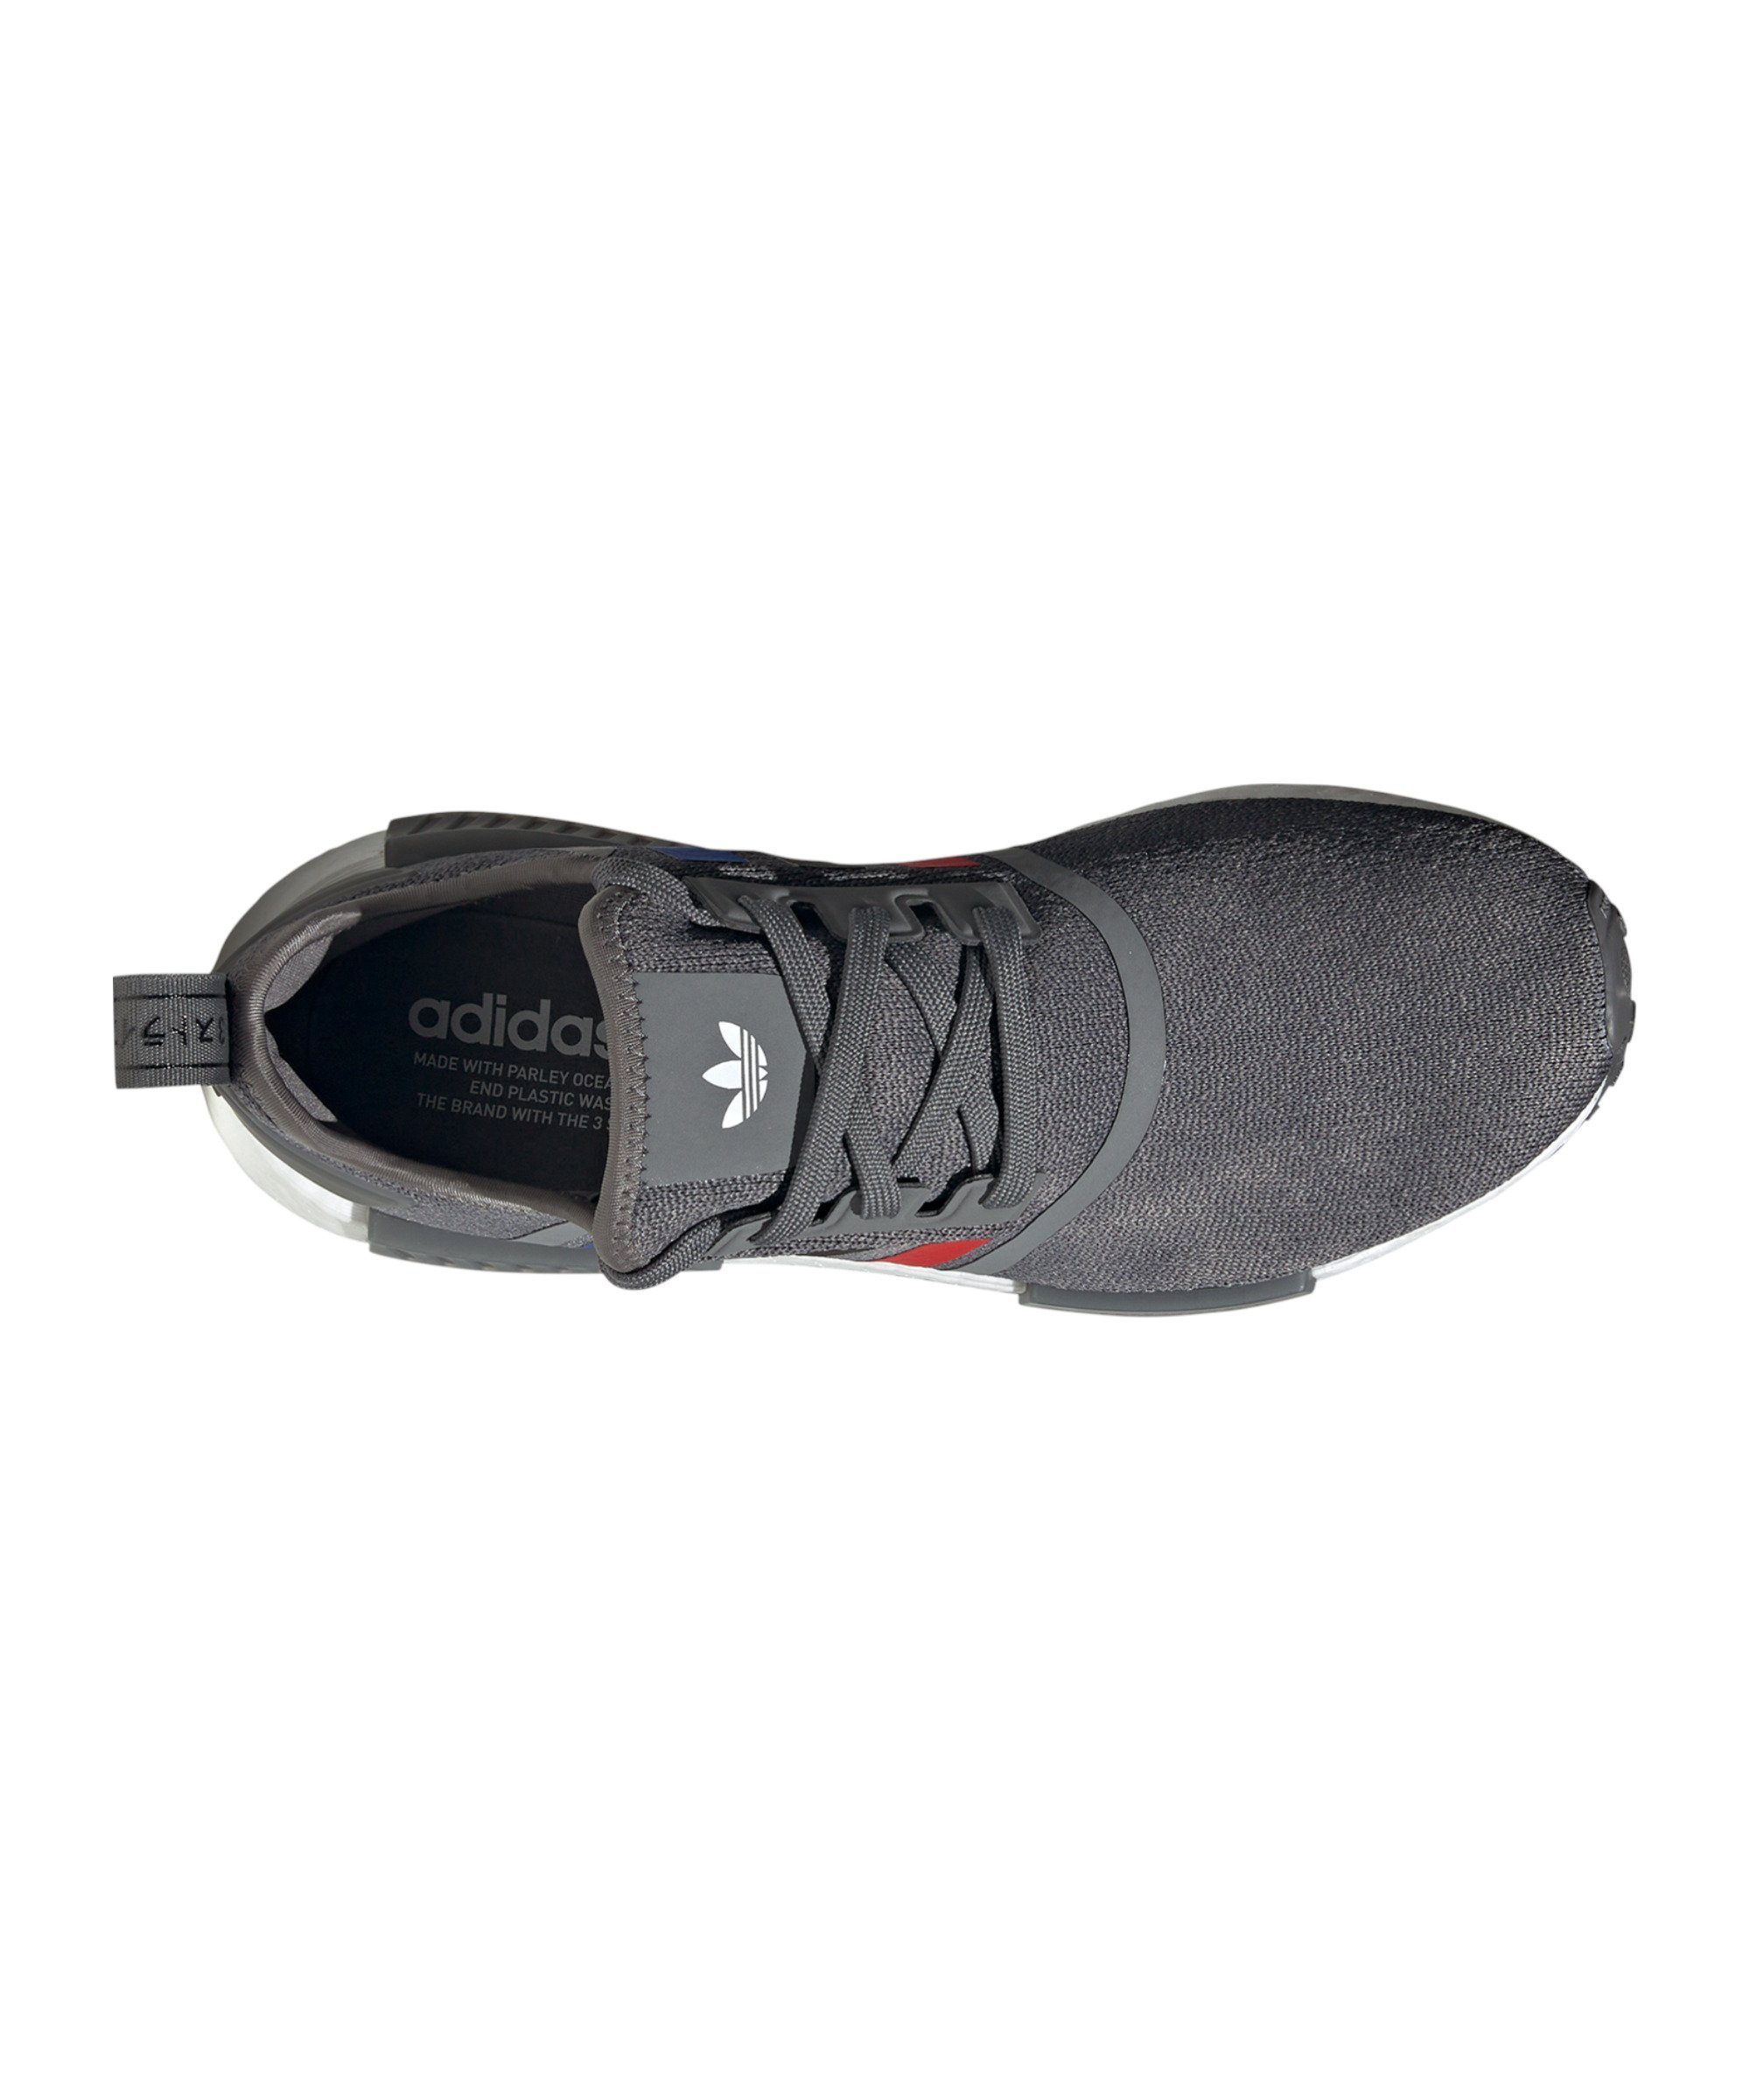 adidas Originals NMD_R1 Sneaker grau